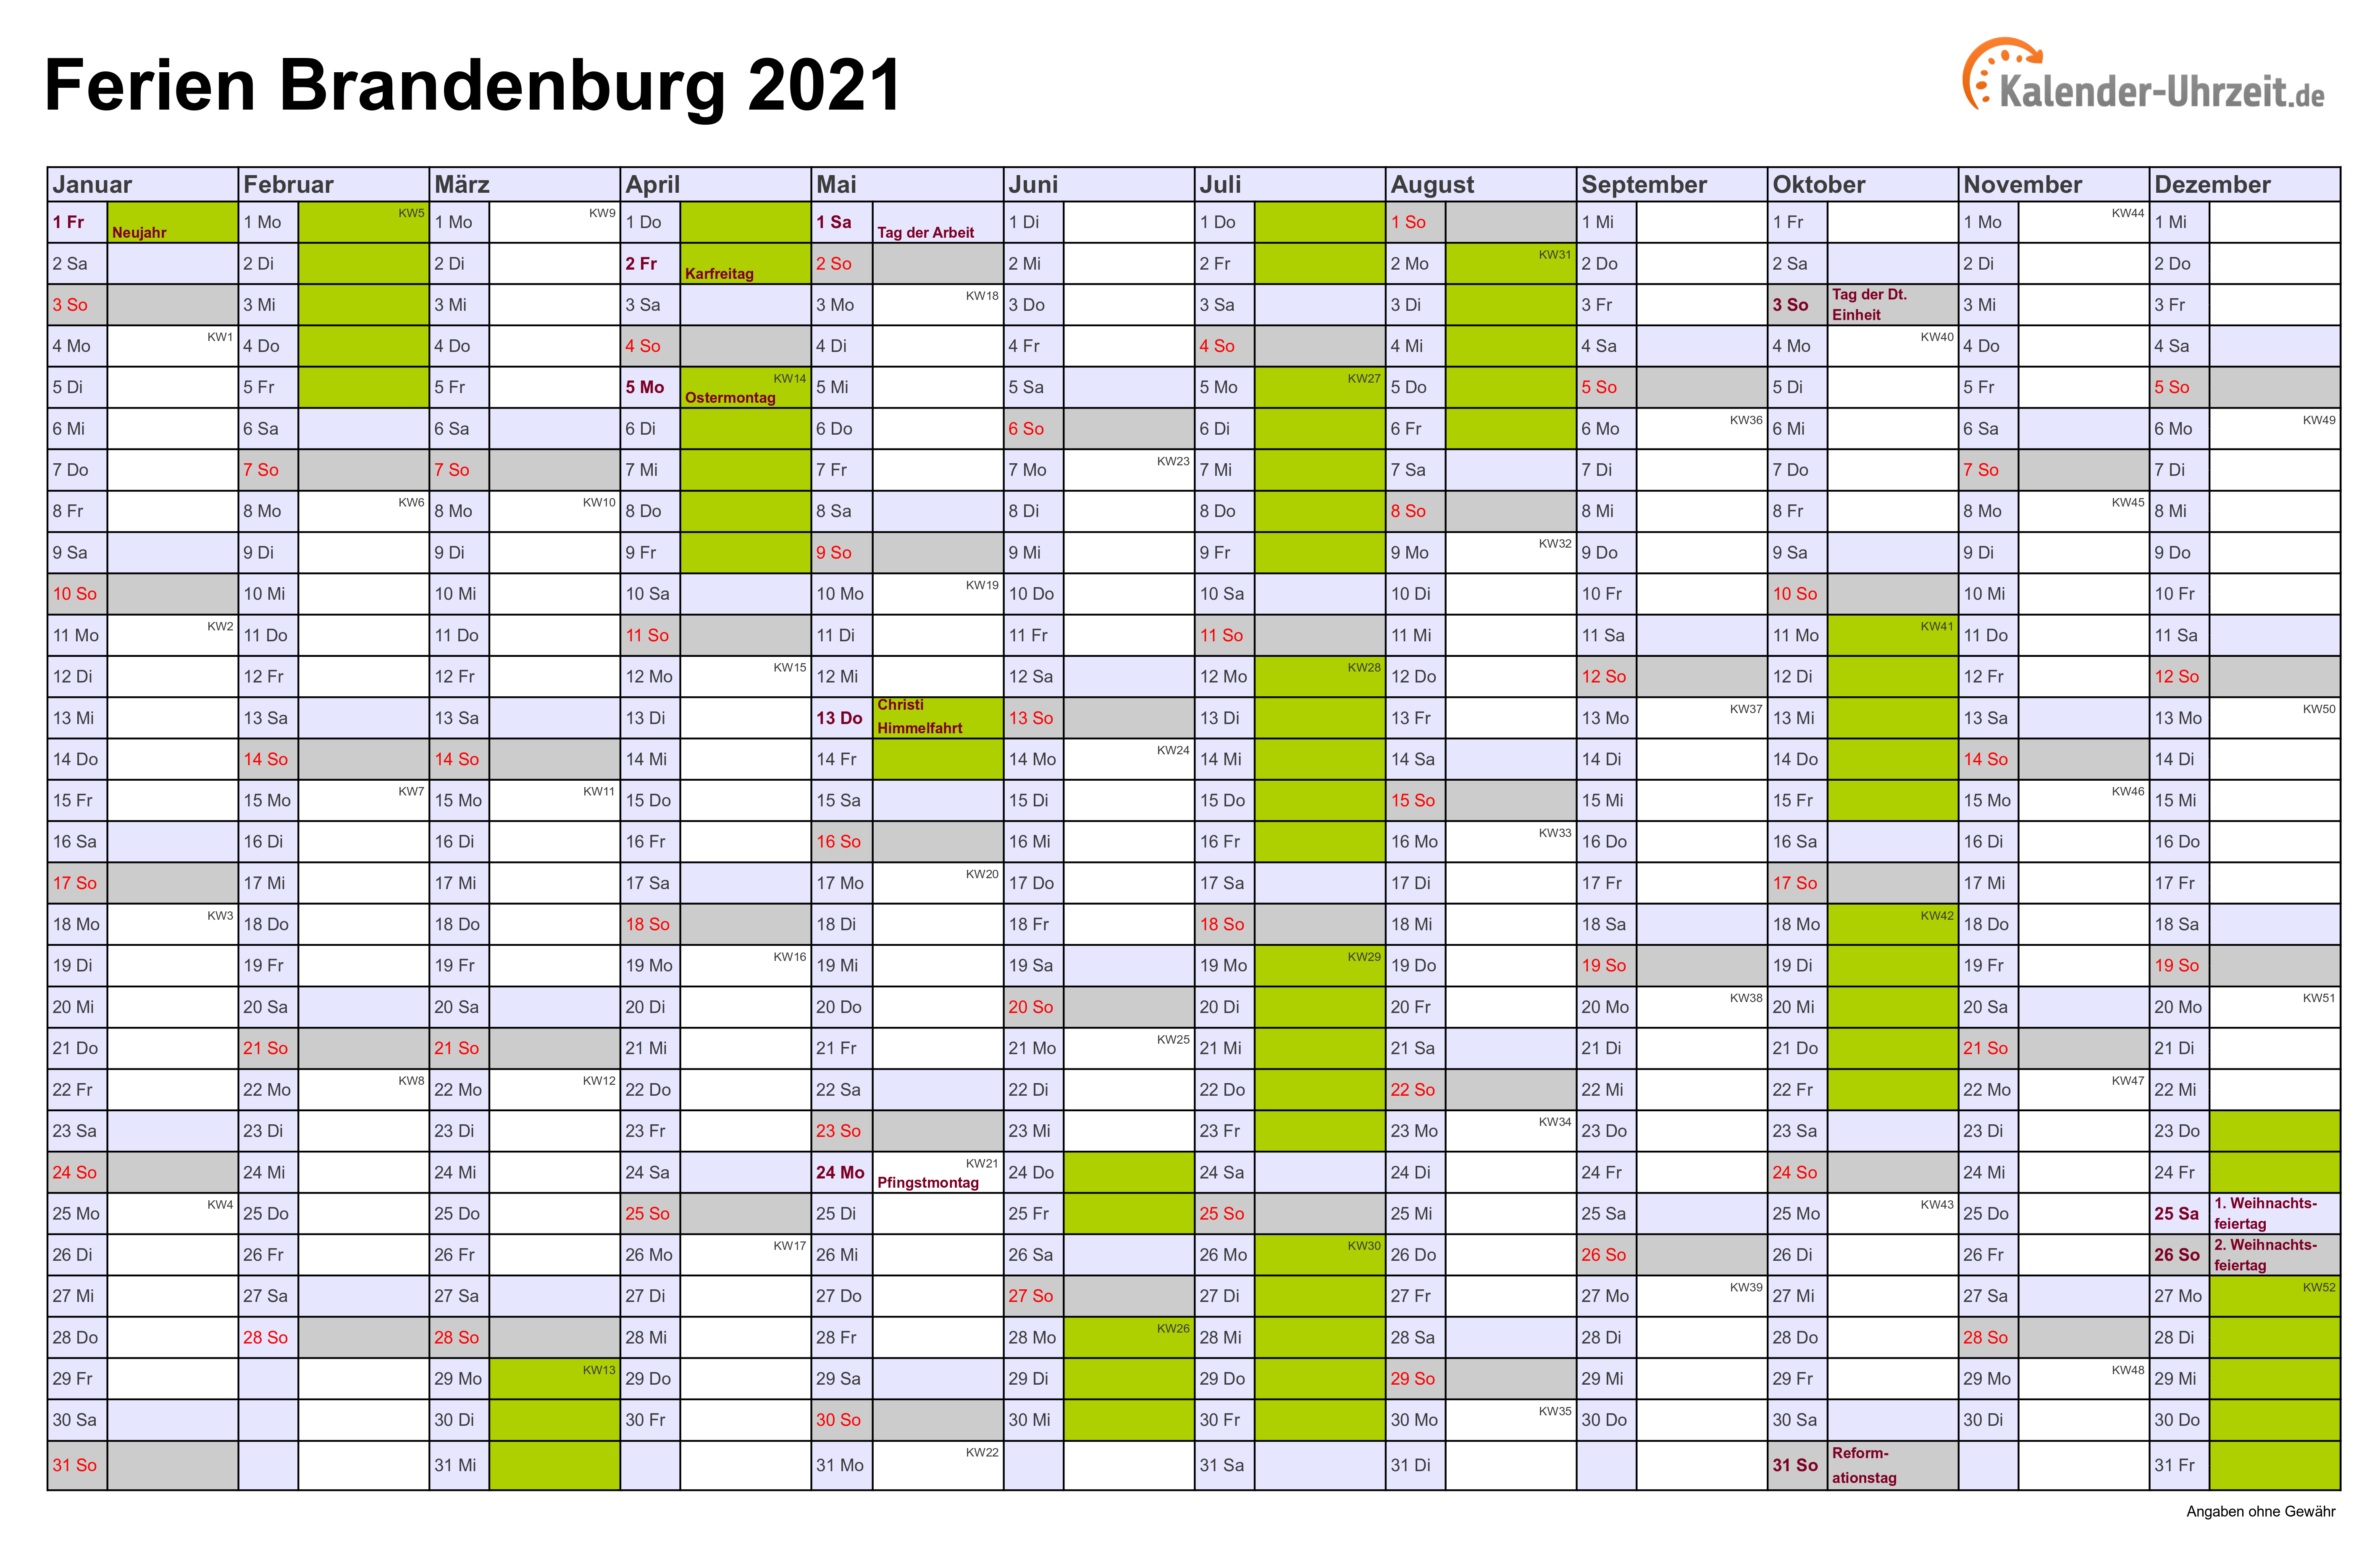 Ferien Brandenburg 2021 - Ferienkalender zum Ausdrucken